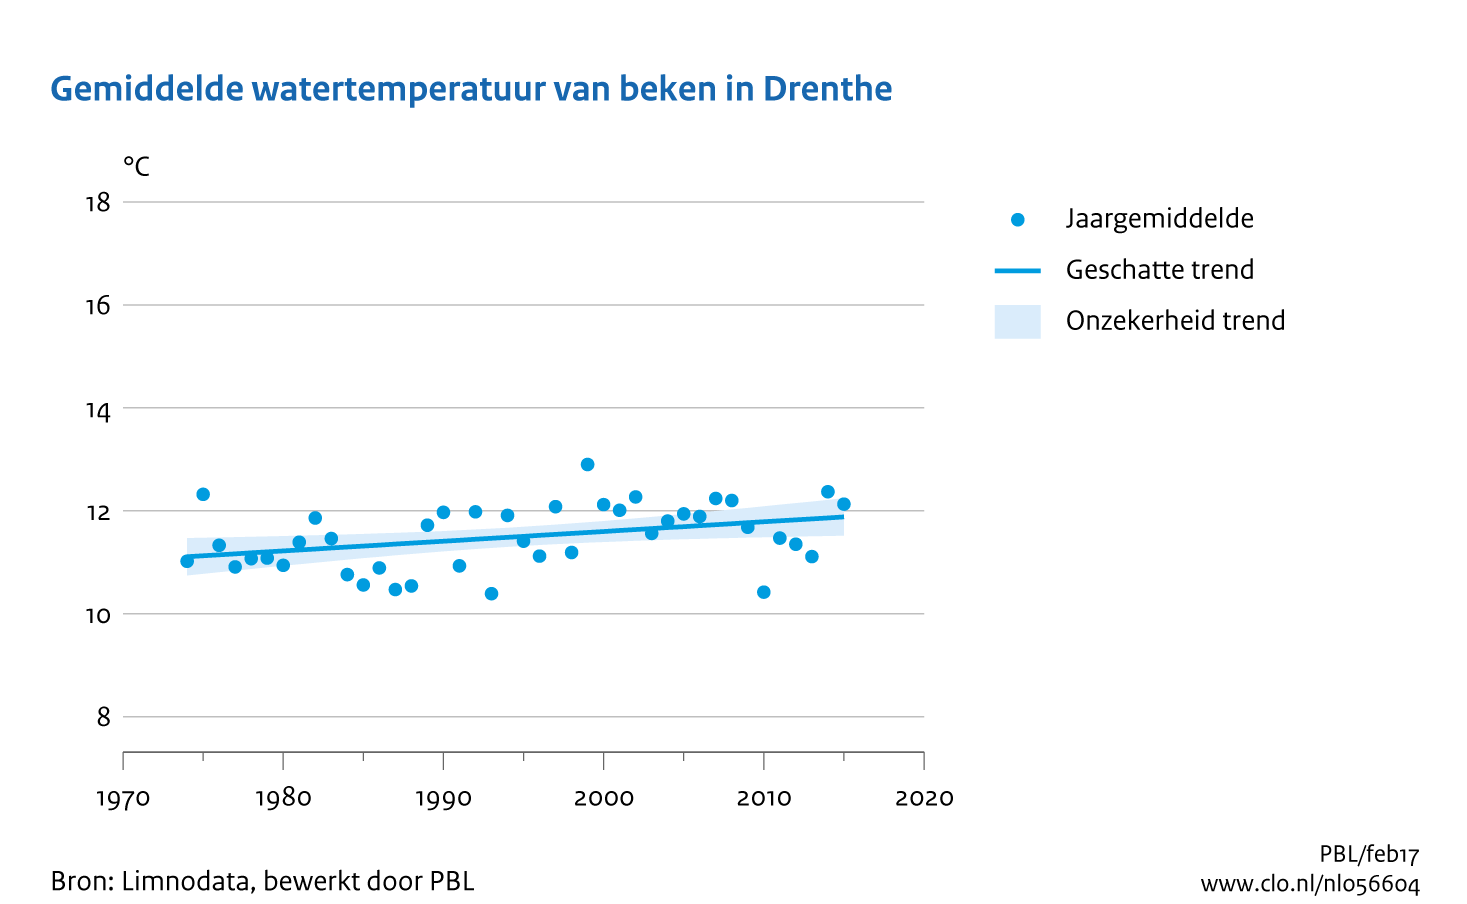 Figuur Gemiddelde watertemperatuur van beken in Drenthe. In de rest van de tekst wordt deze figuur uitgebreider uitgelegd.